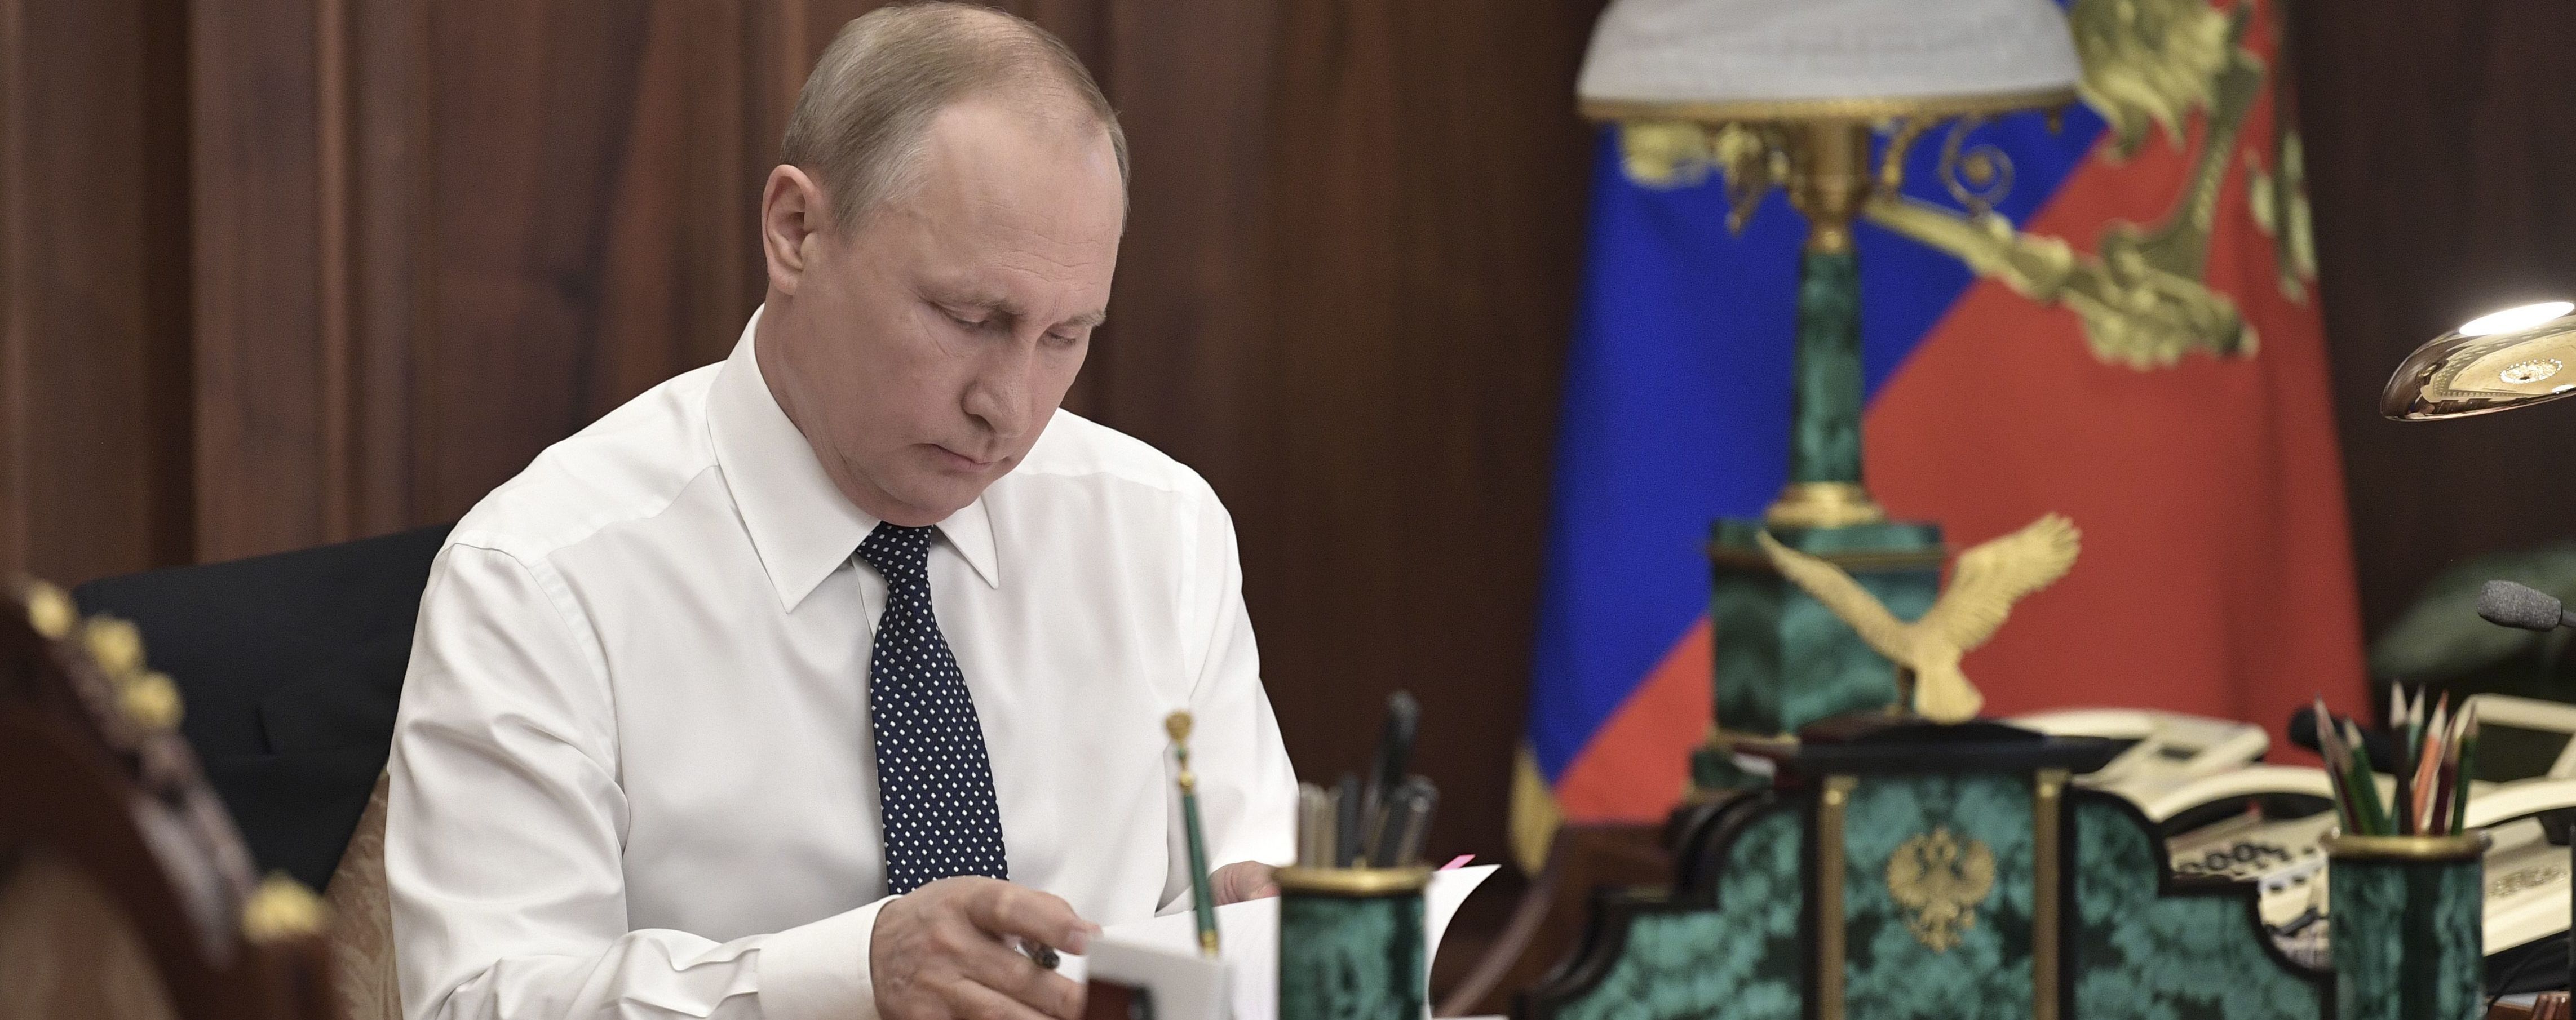 Останній крок: Путін підписав указ про внесення поправок до Конституції РФ